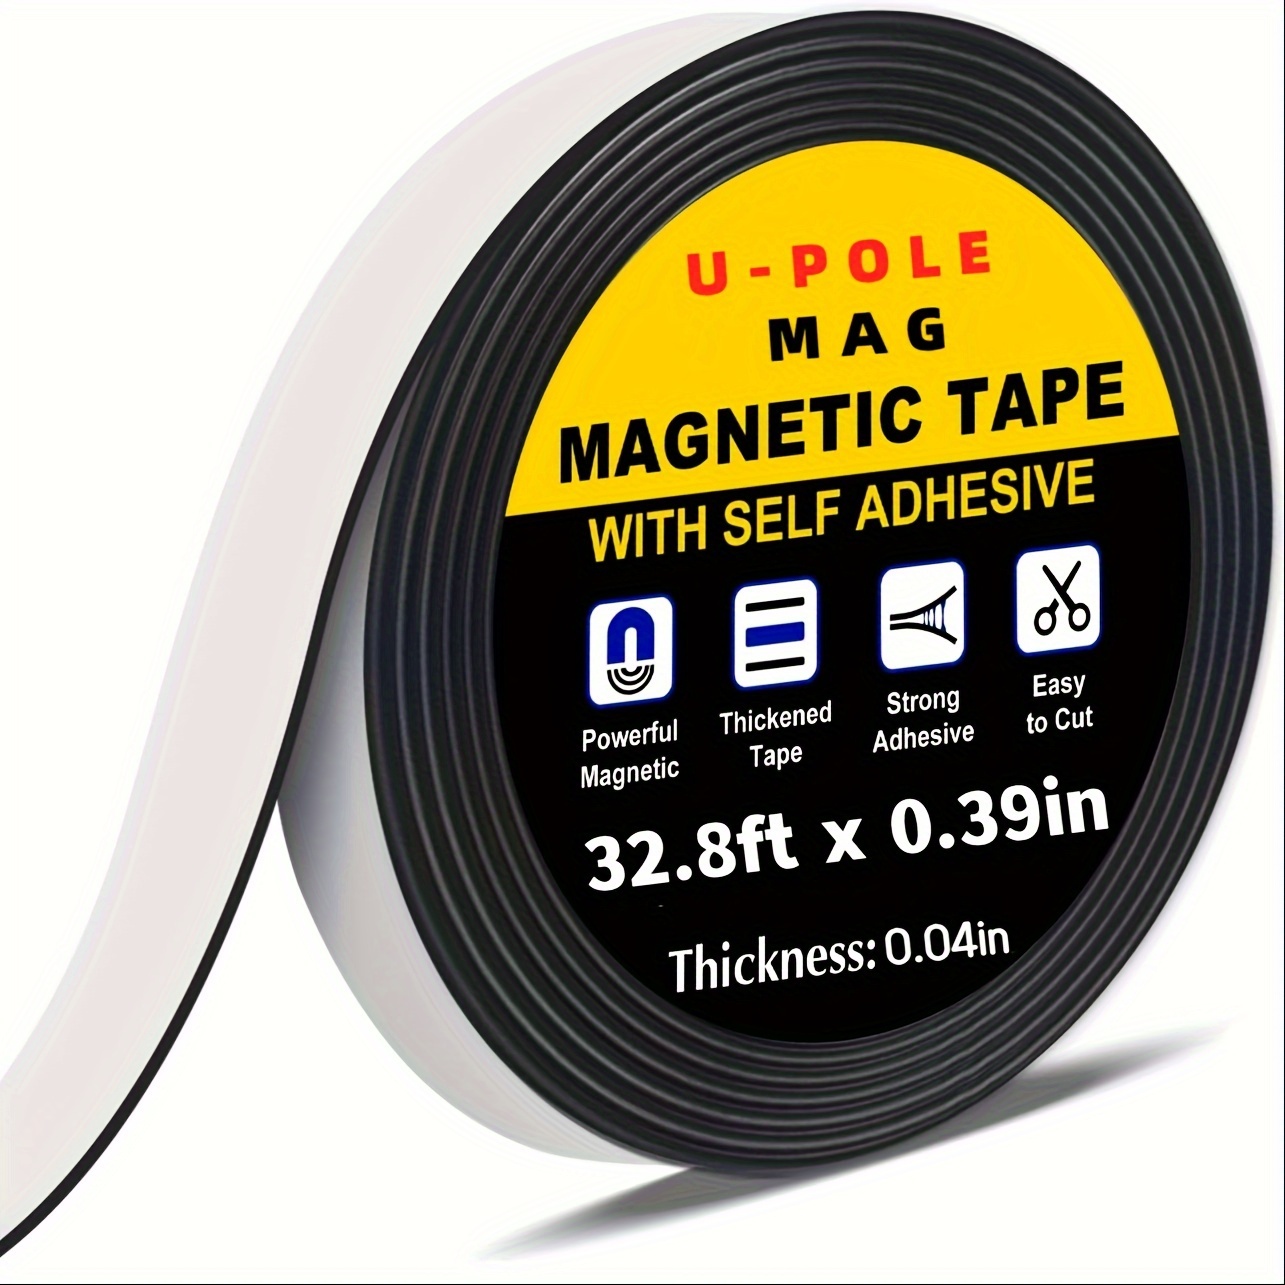 Cinta magnética, 3 rollos de tiras magnéticas flexibles de 30 pies con  respaldo adhesivo fuerte (cada uno de 10 pies x 1/16 pulgadas de grosor x  1/2